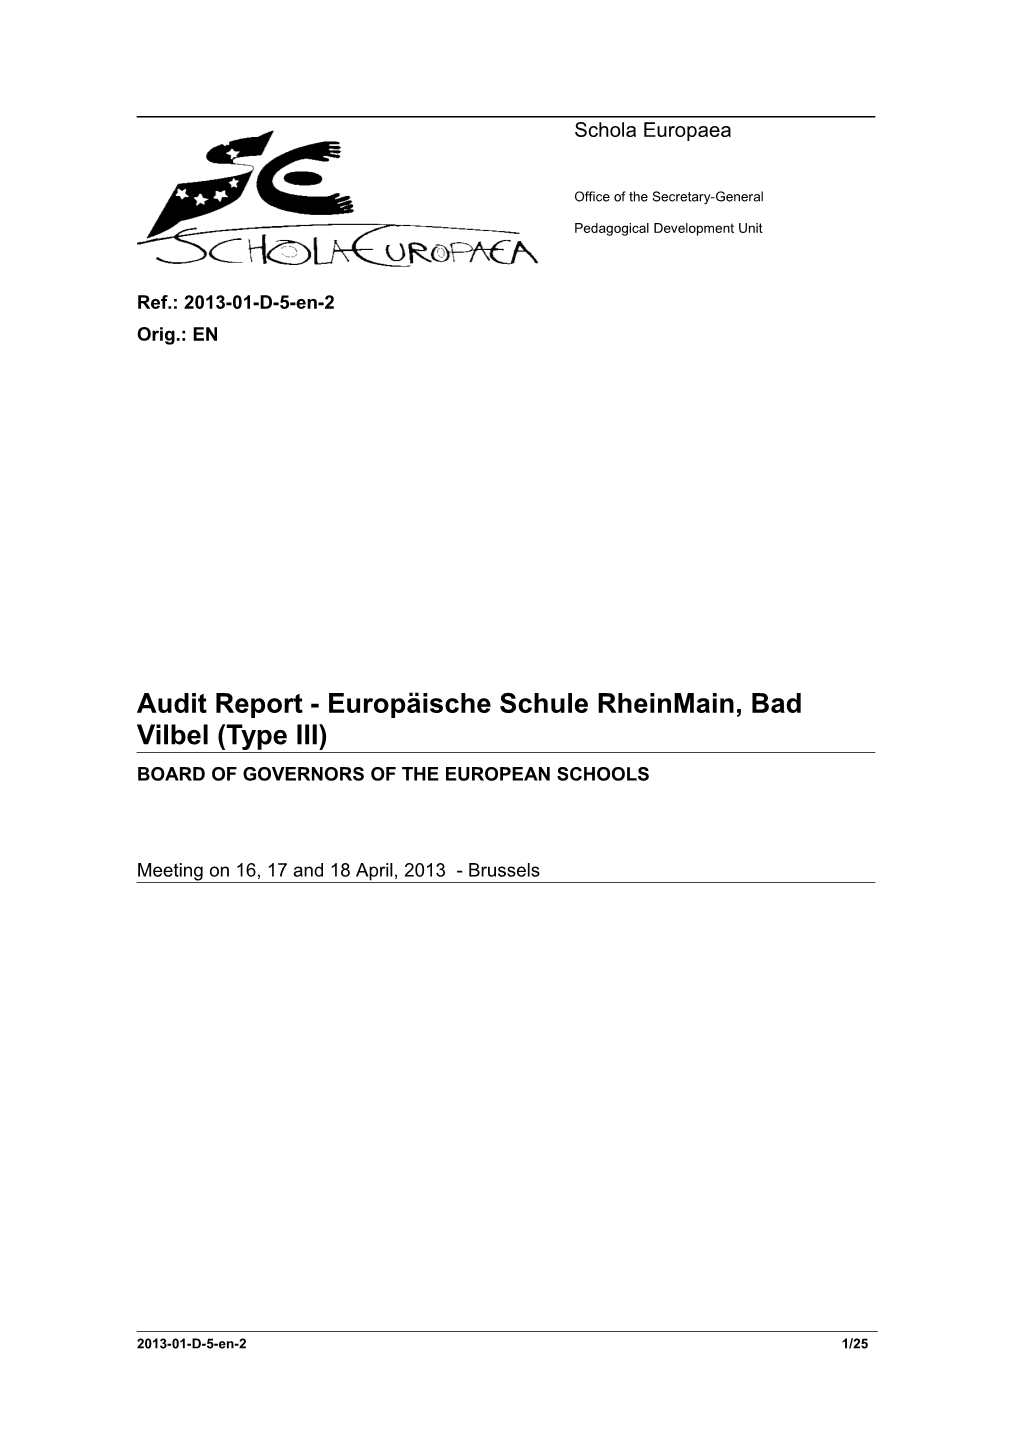 Audit Report - Europäische Schule Rheinmain, Bad Vilbel (Type III)